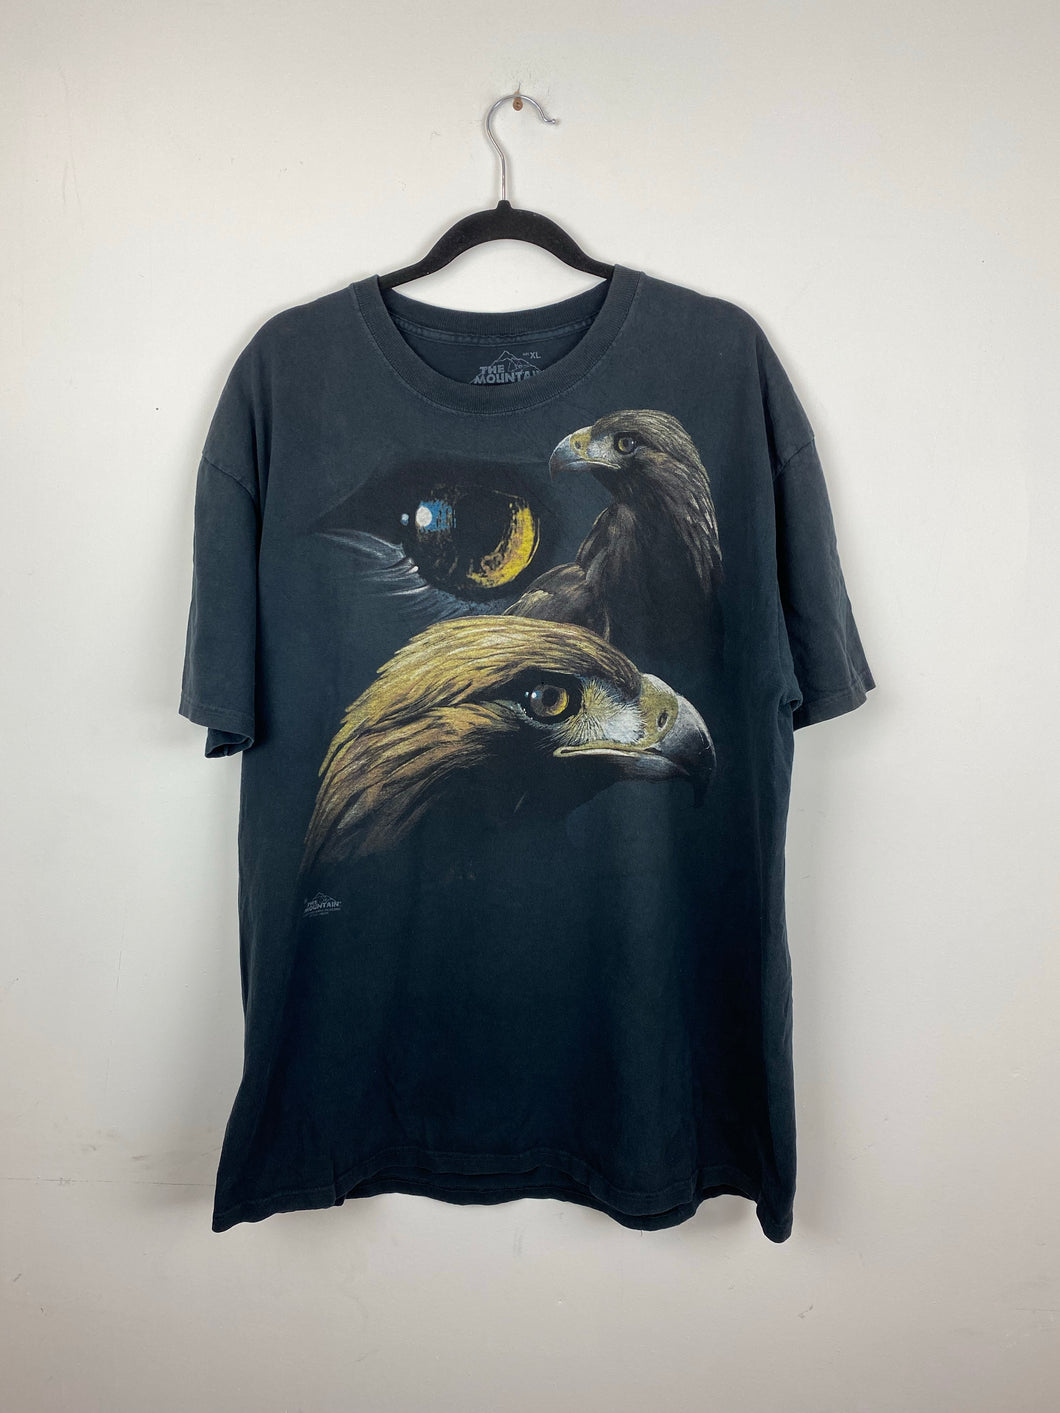 90s oversized Eagle t shirt